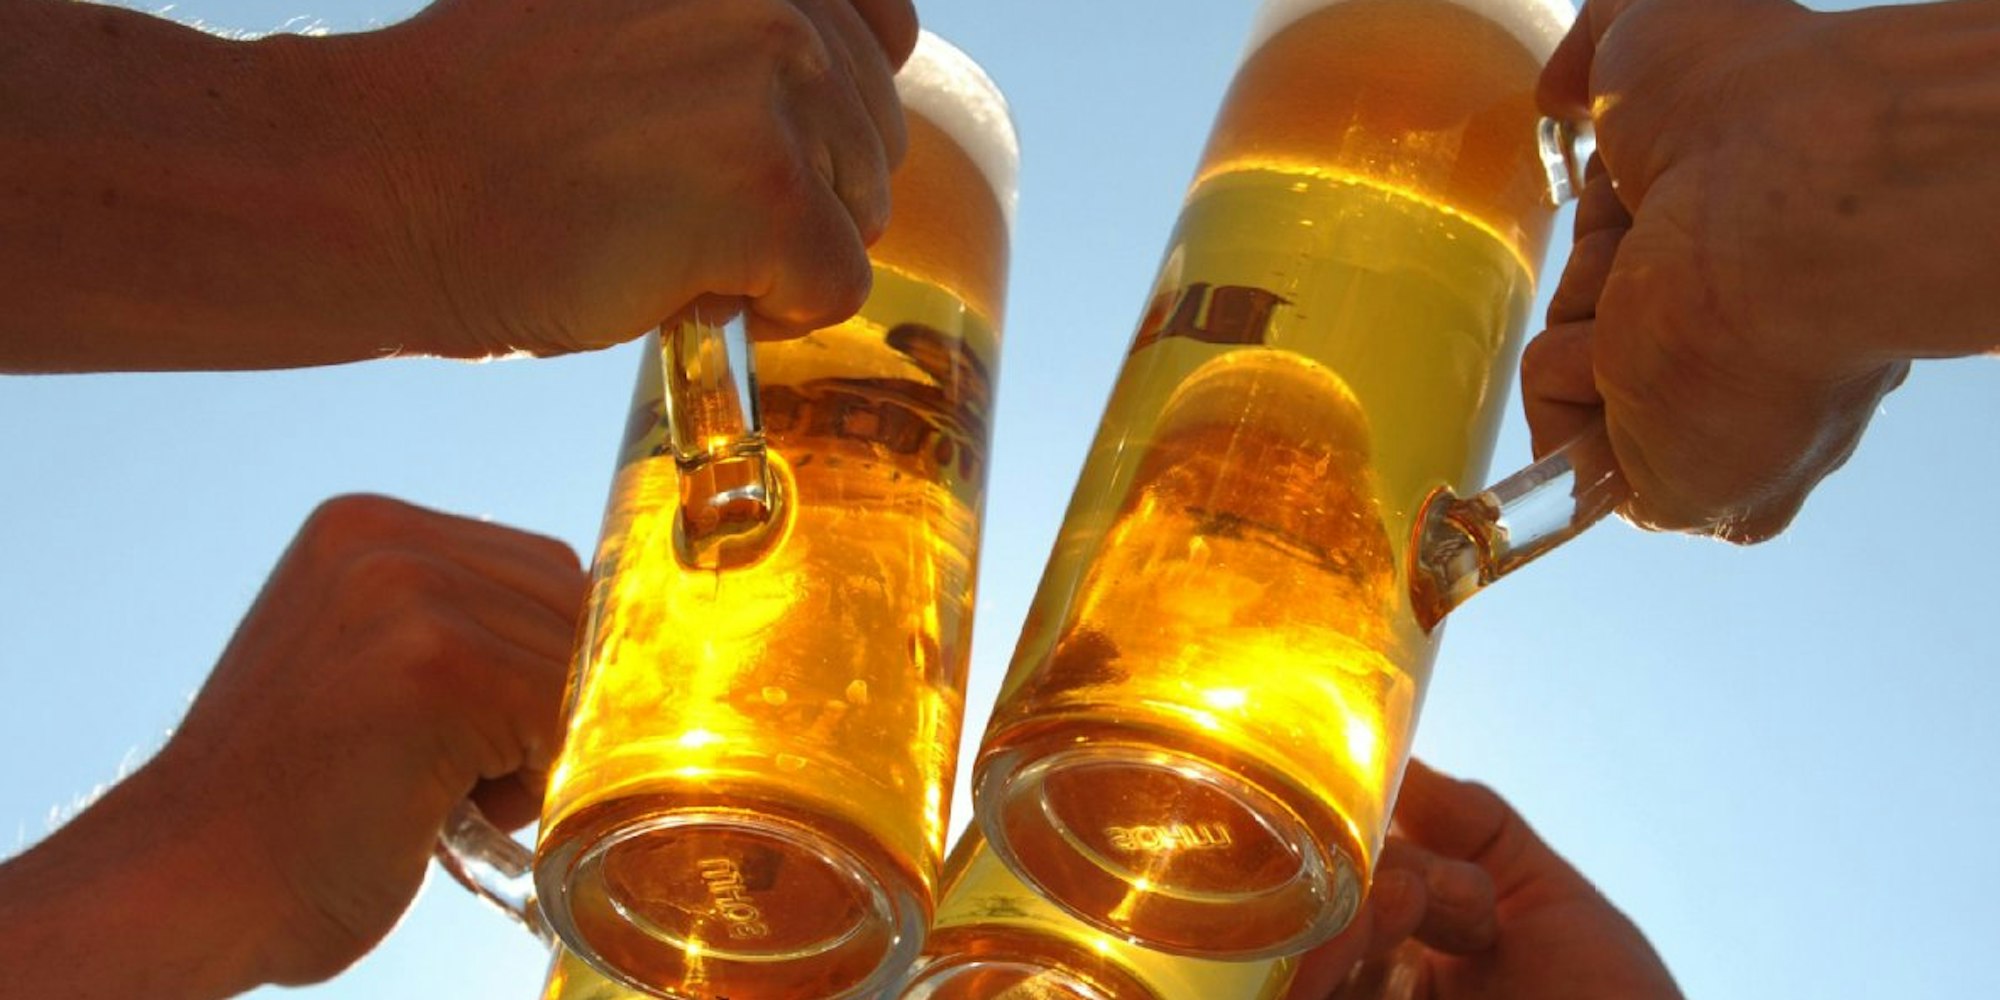 „Drei Bier sind auch ein Schnitzel“ - an solchen Stammtischsprüchen ist etwas Wahres dran. Der Energiegehalt von Alkohol wird allgemein unterschätzt.